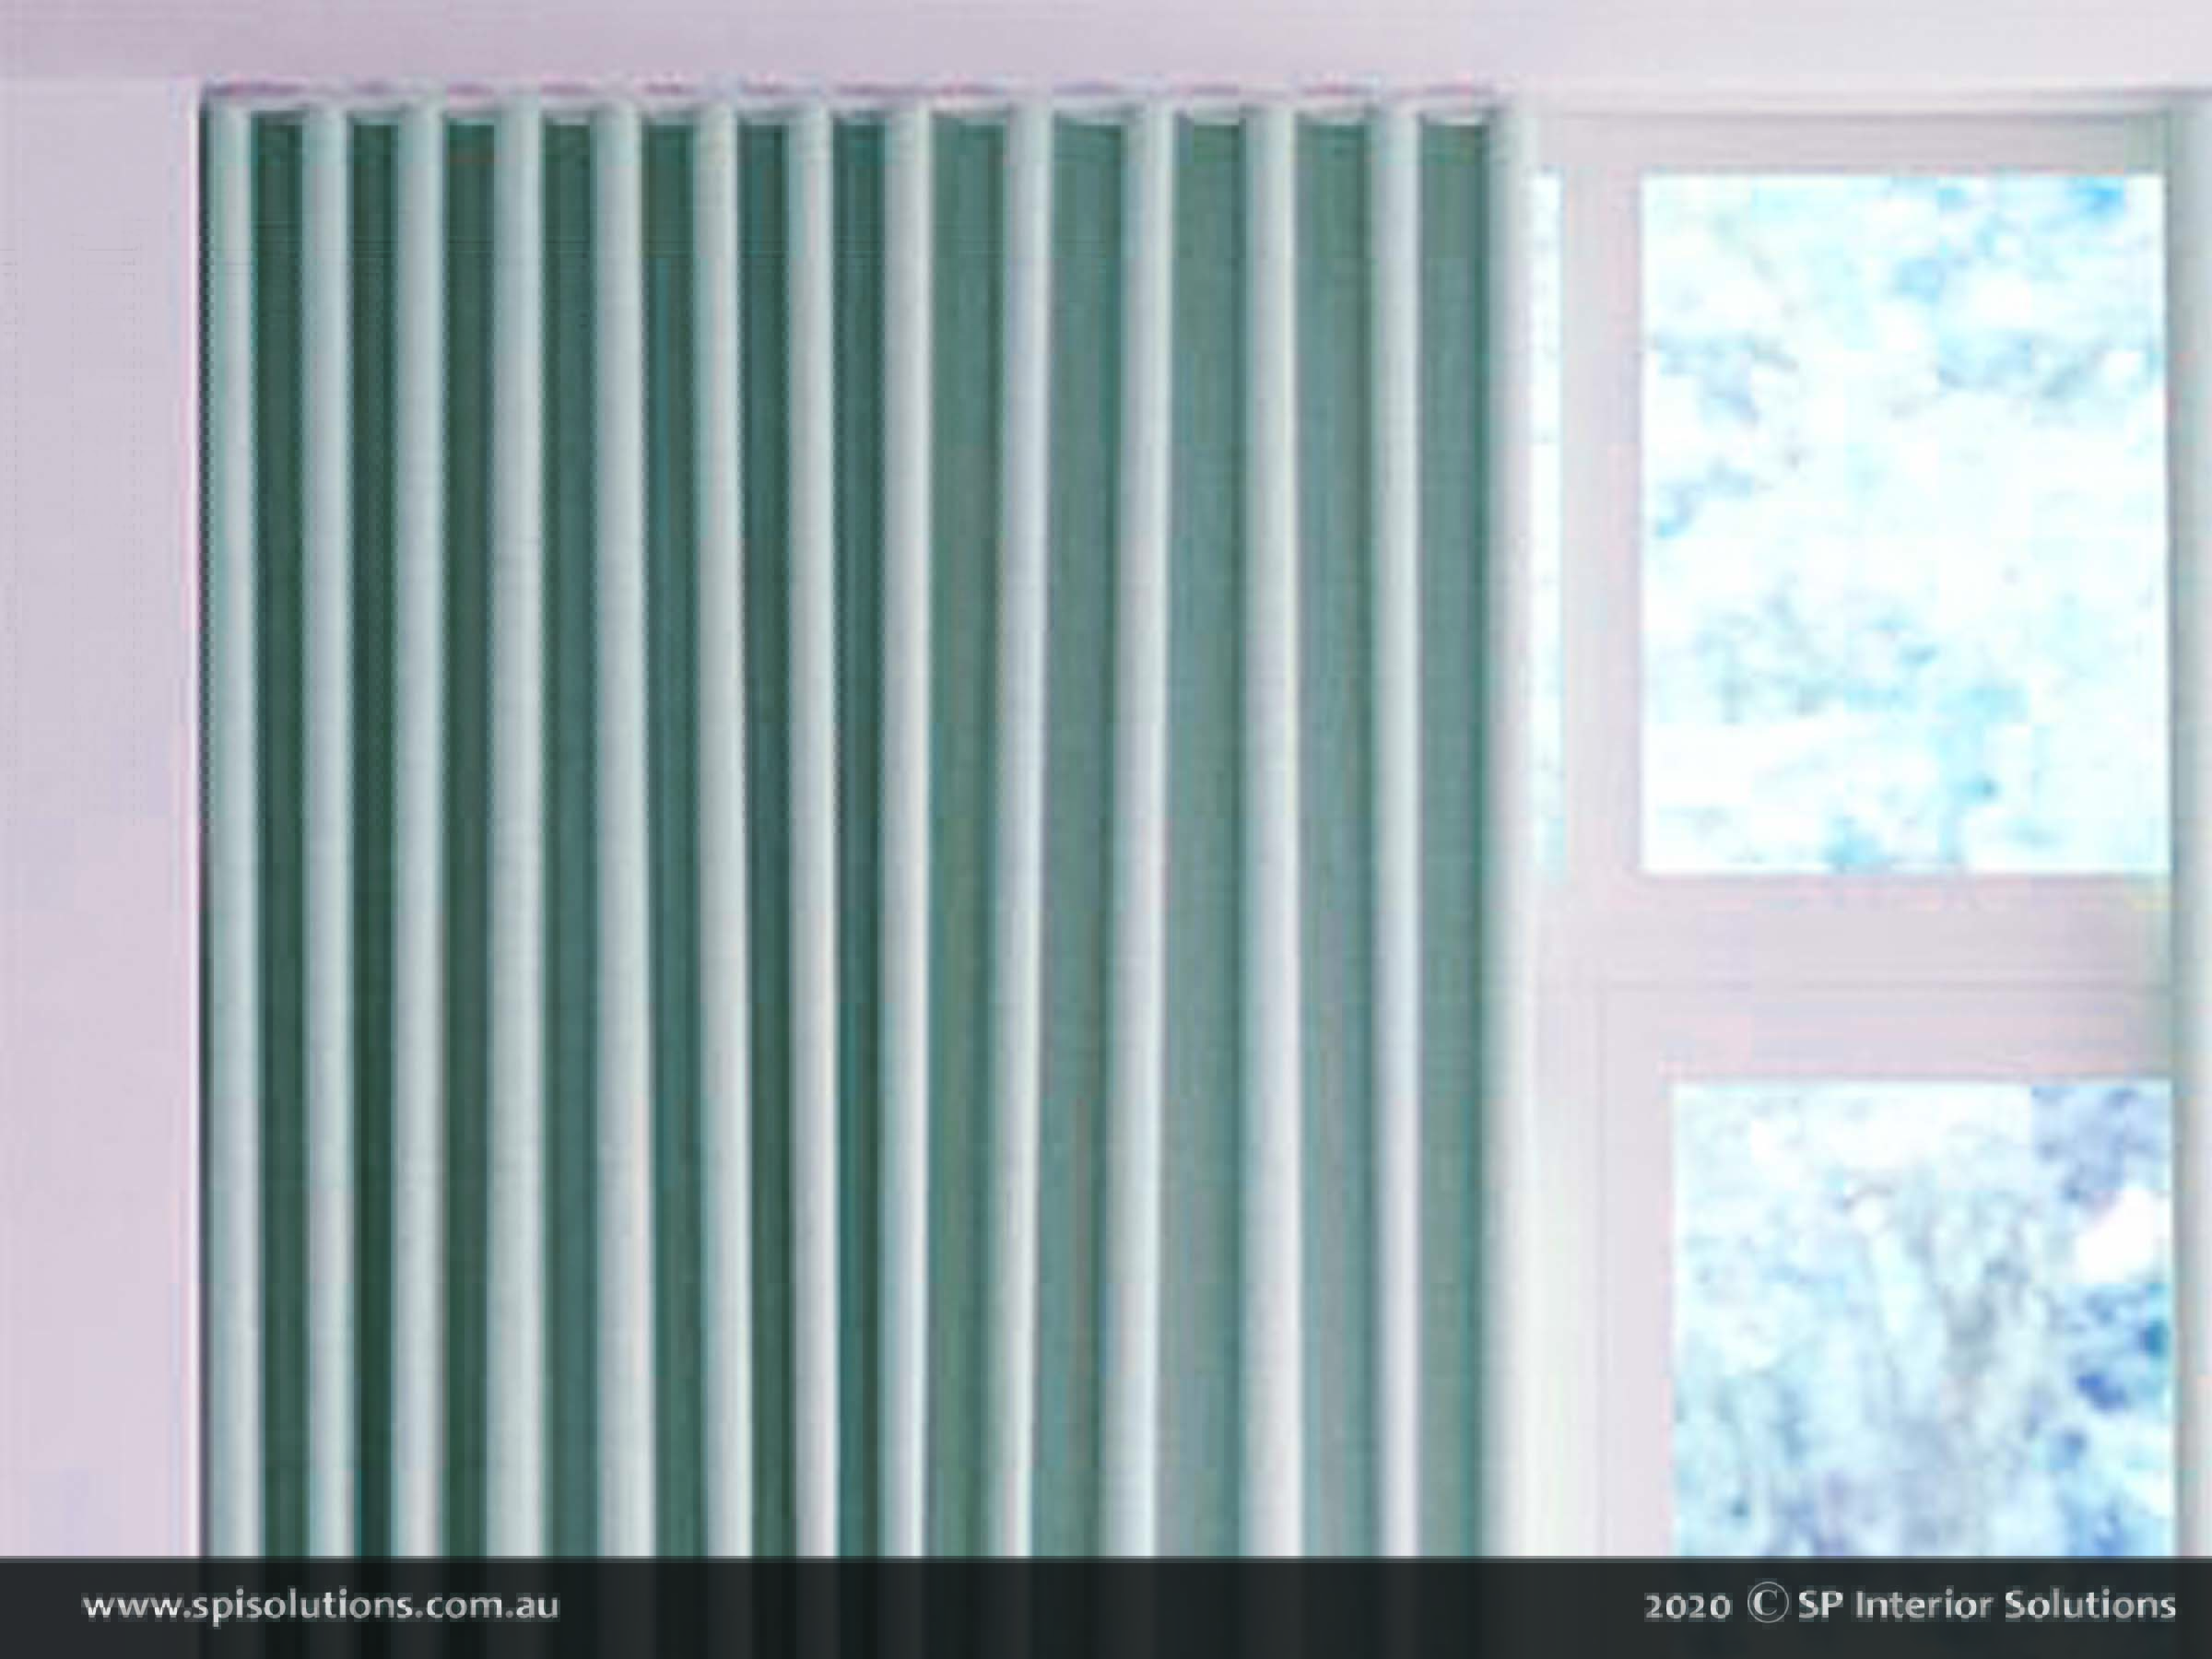 S-Fold Curtains